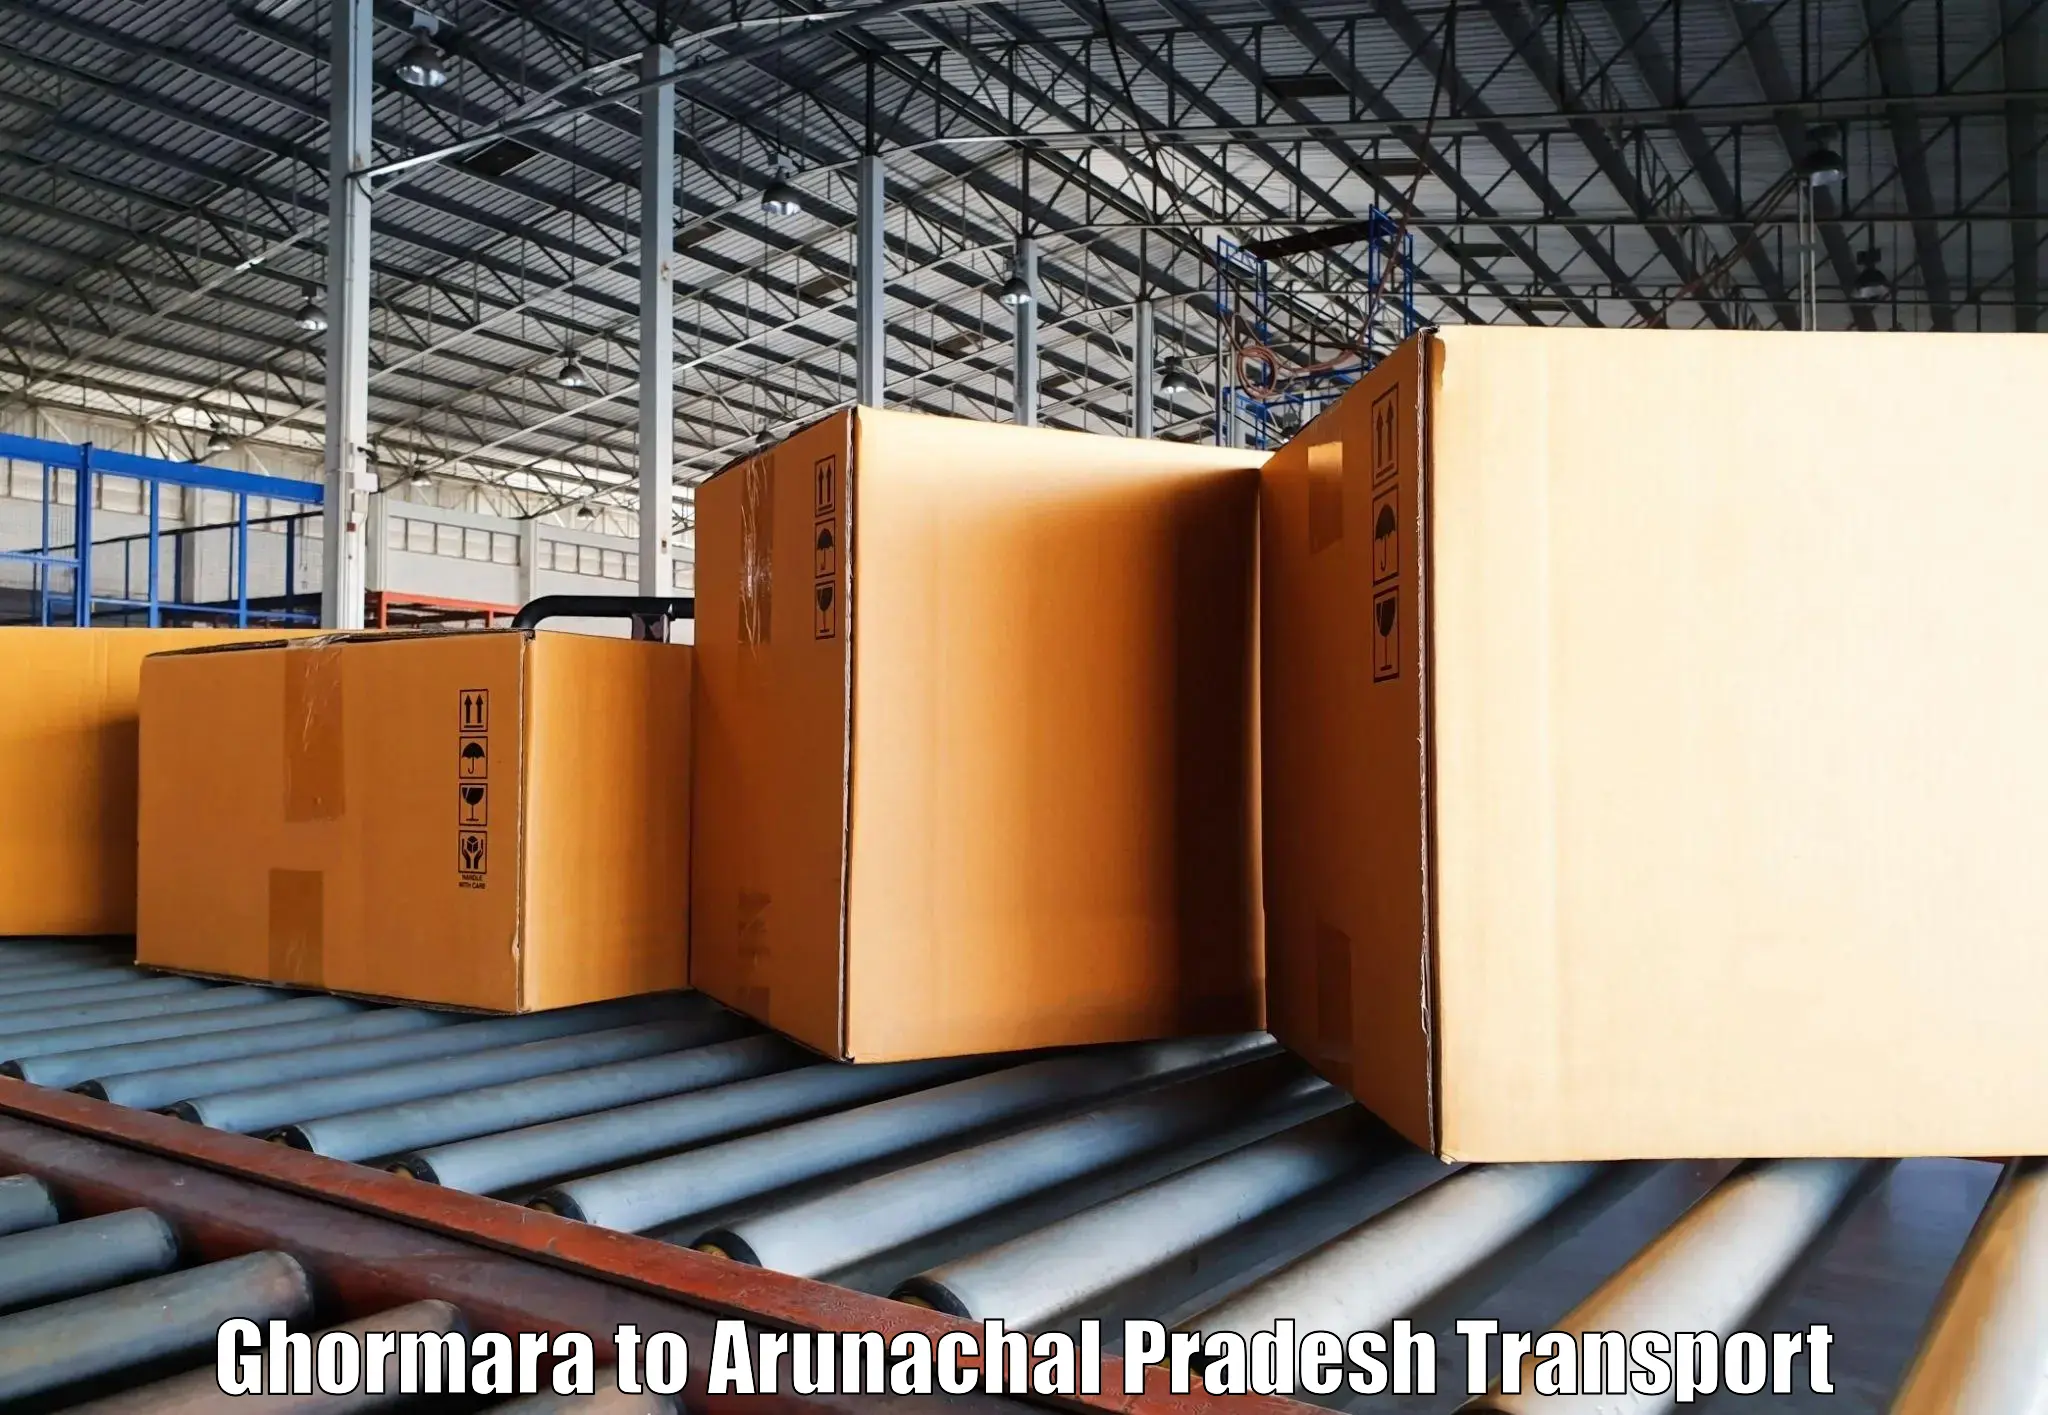 Truck transport companies in India Ghormara to Tezu